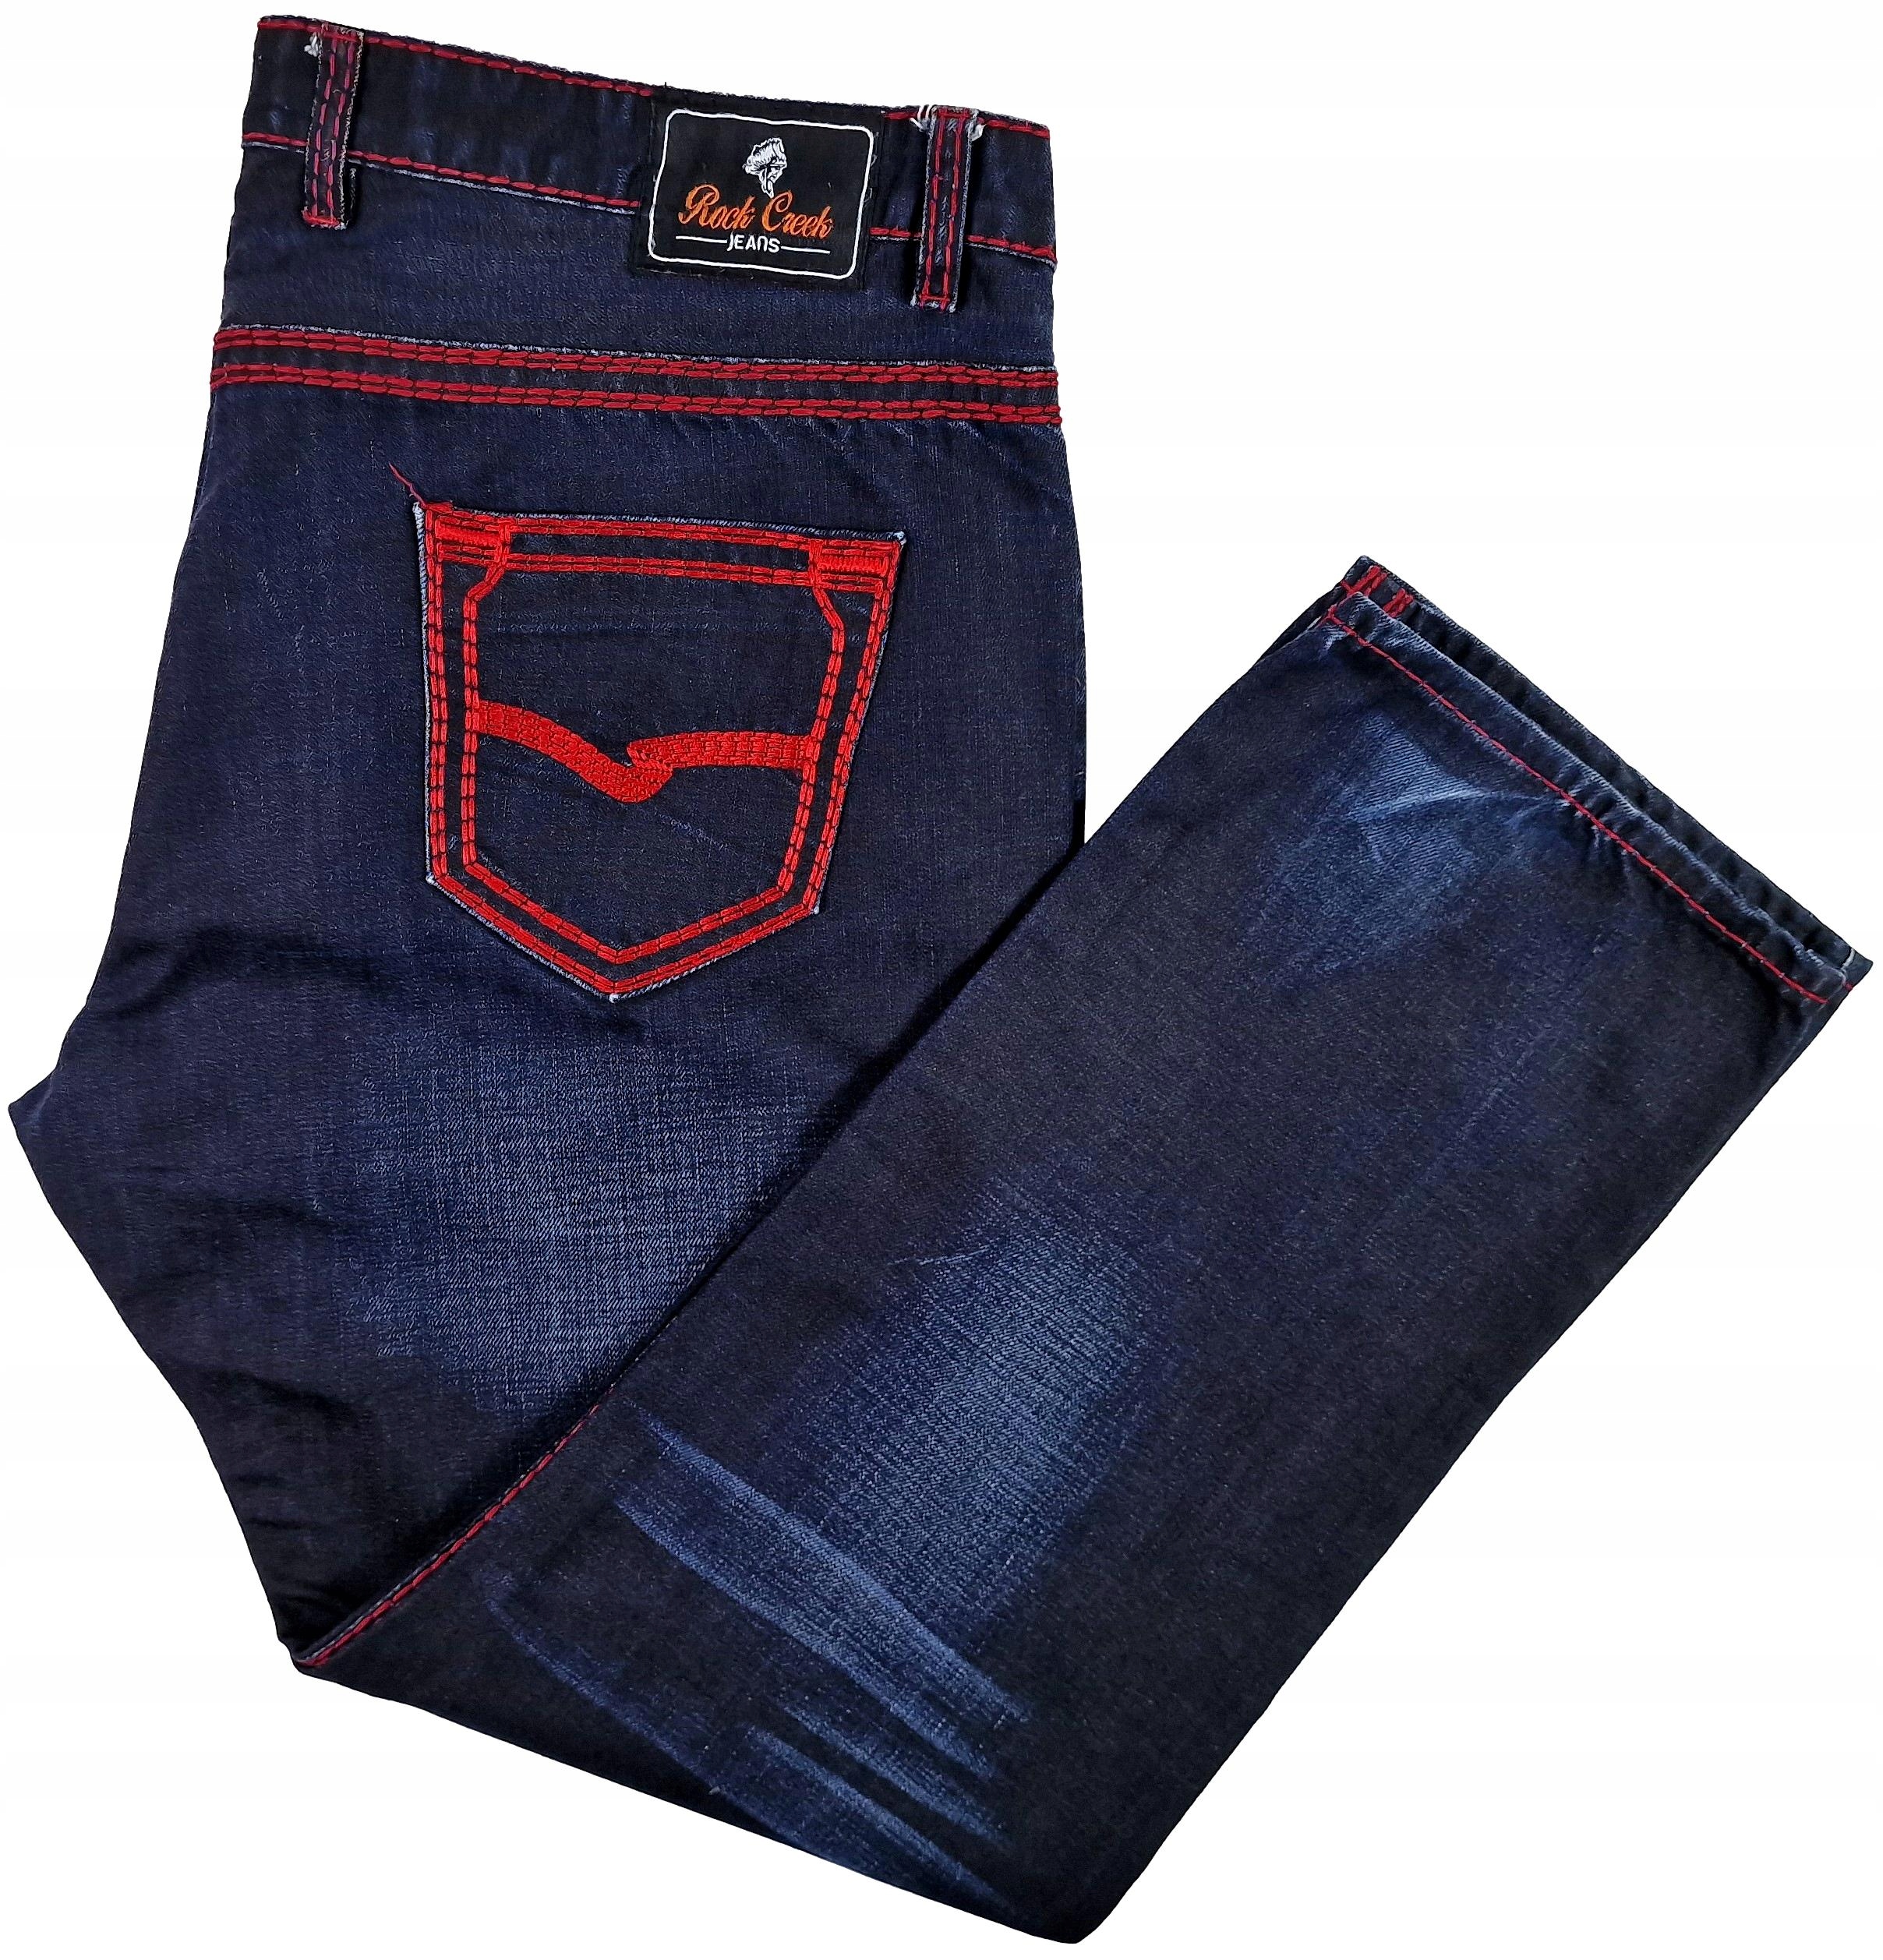 Spodnie męskie jeans ROCK CREEK (1697) pas: 116 r. 44/32 JAK NOWE!